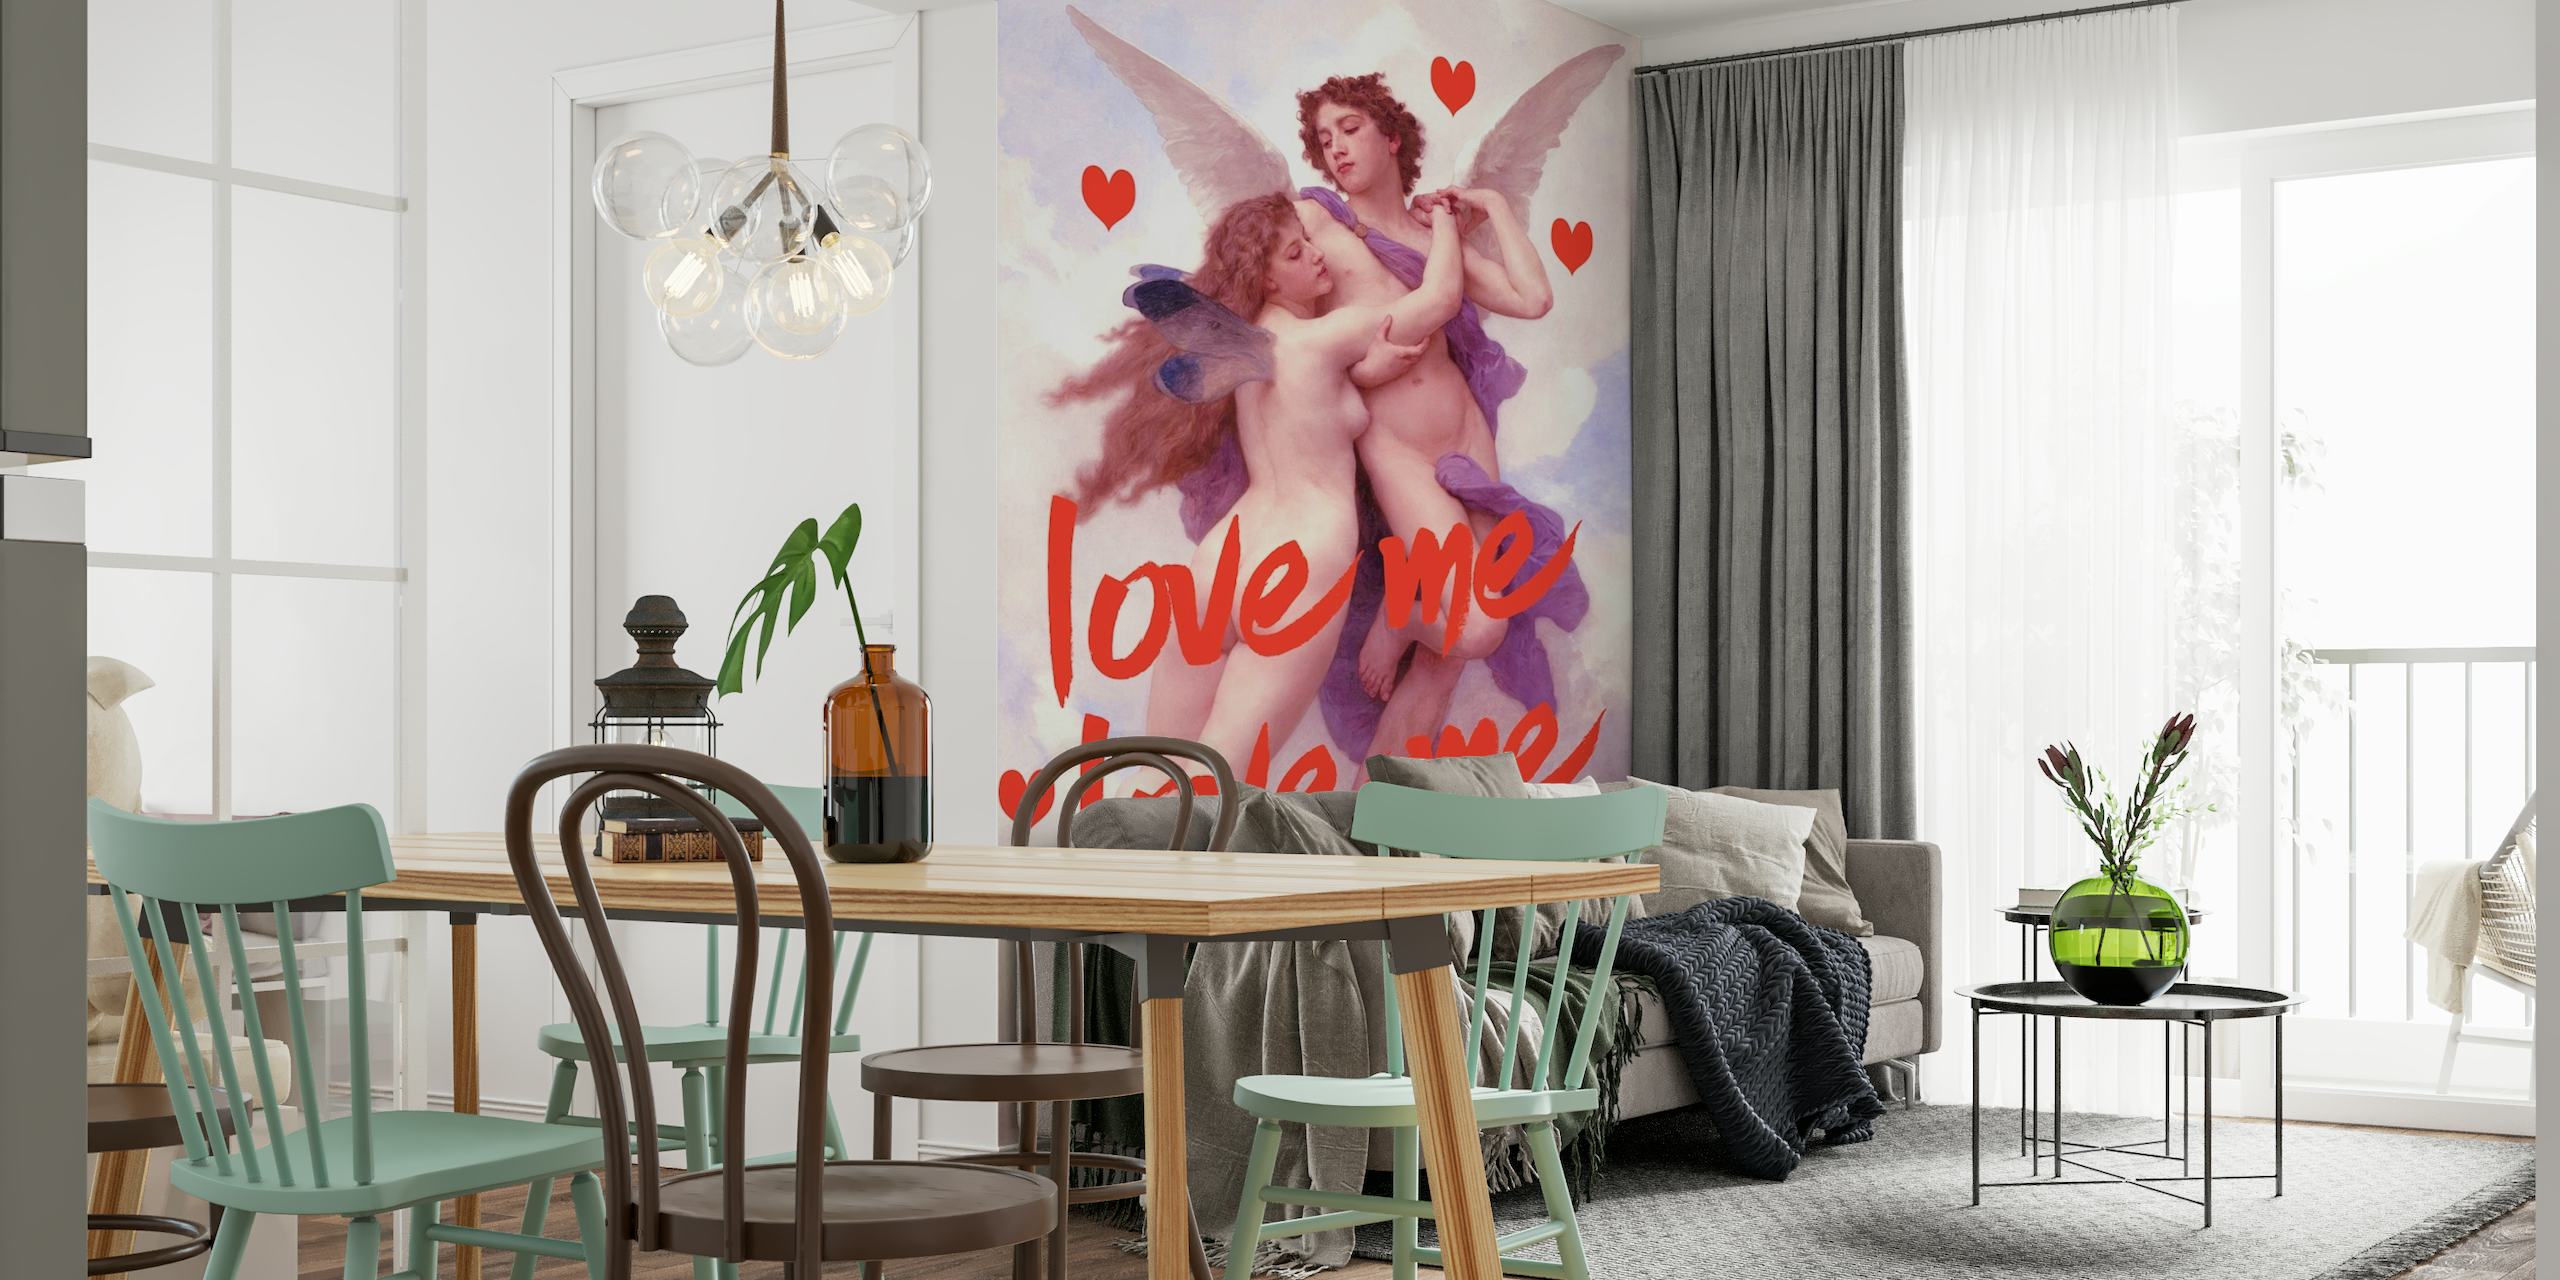 Romantic Love Angel zidna slika s anđelima i srcima